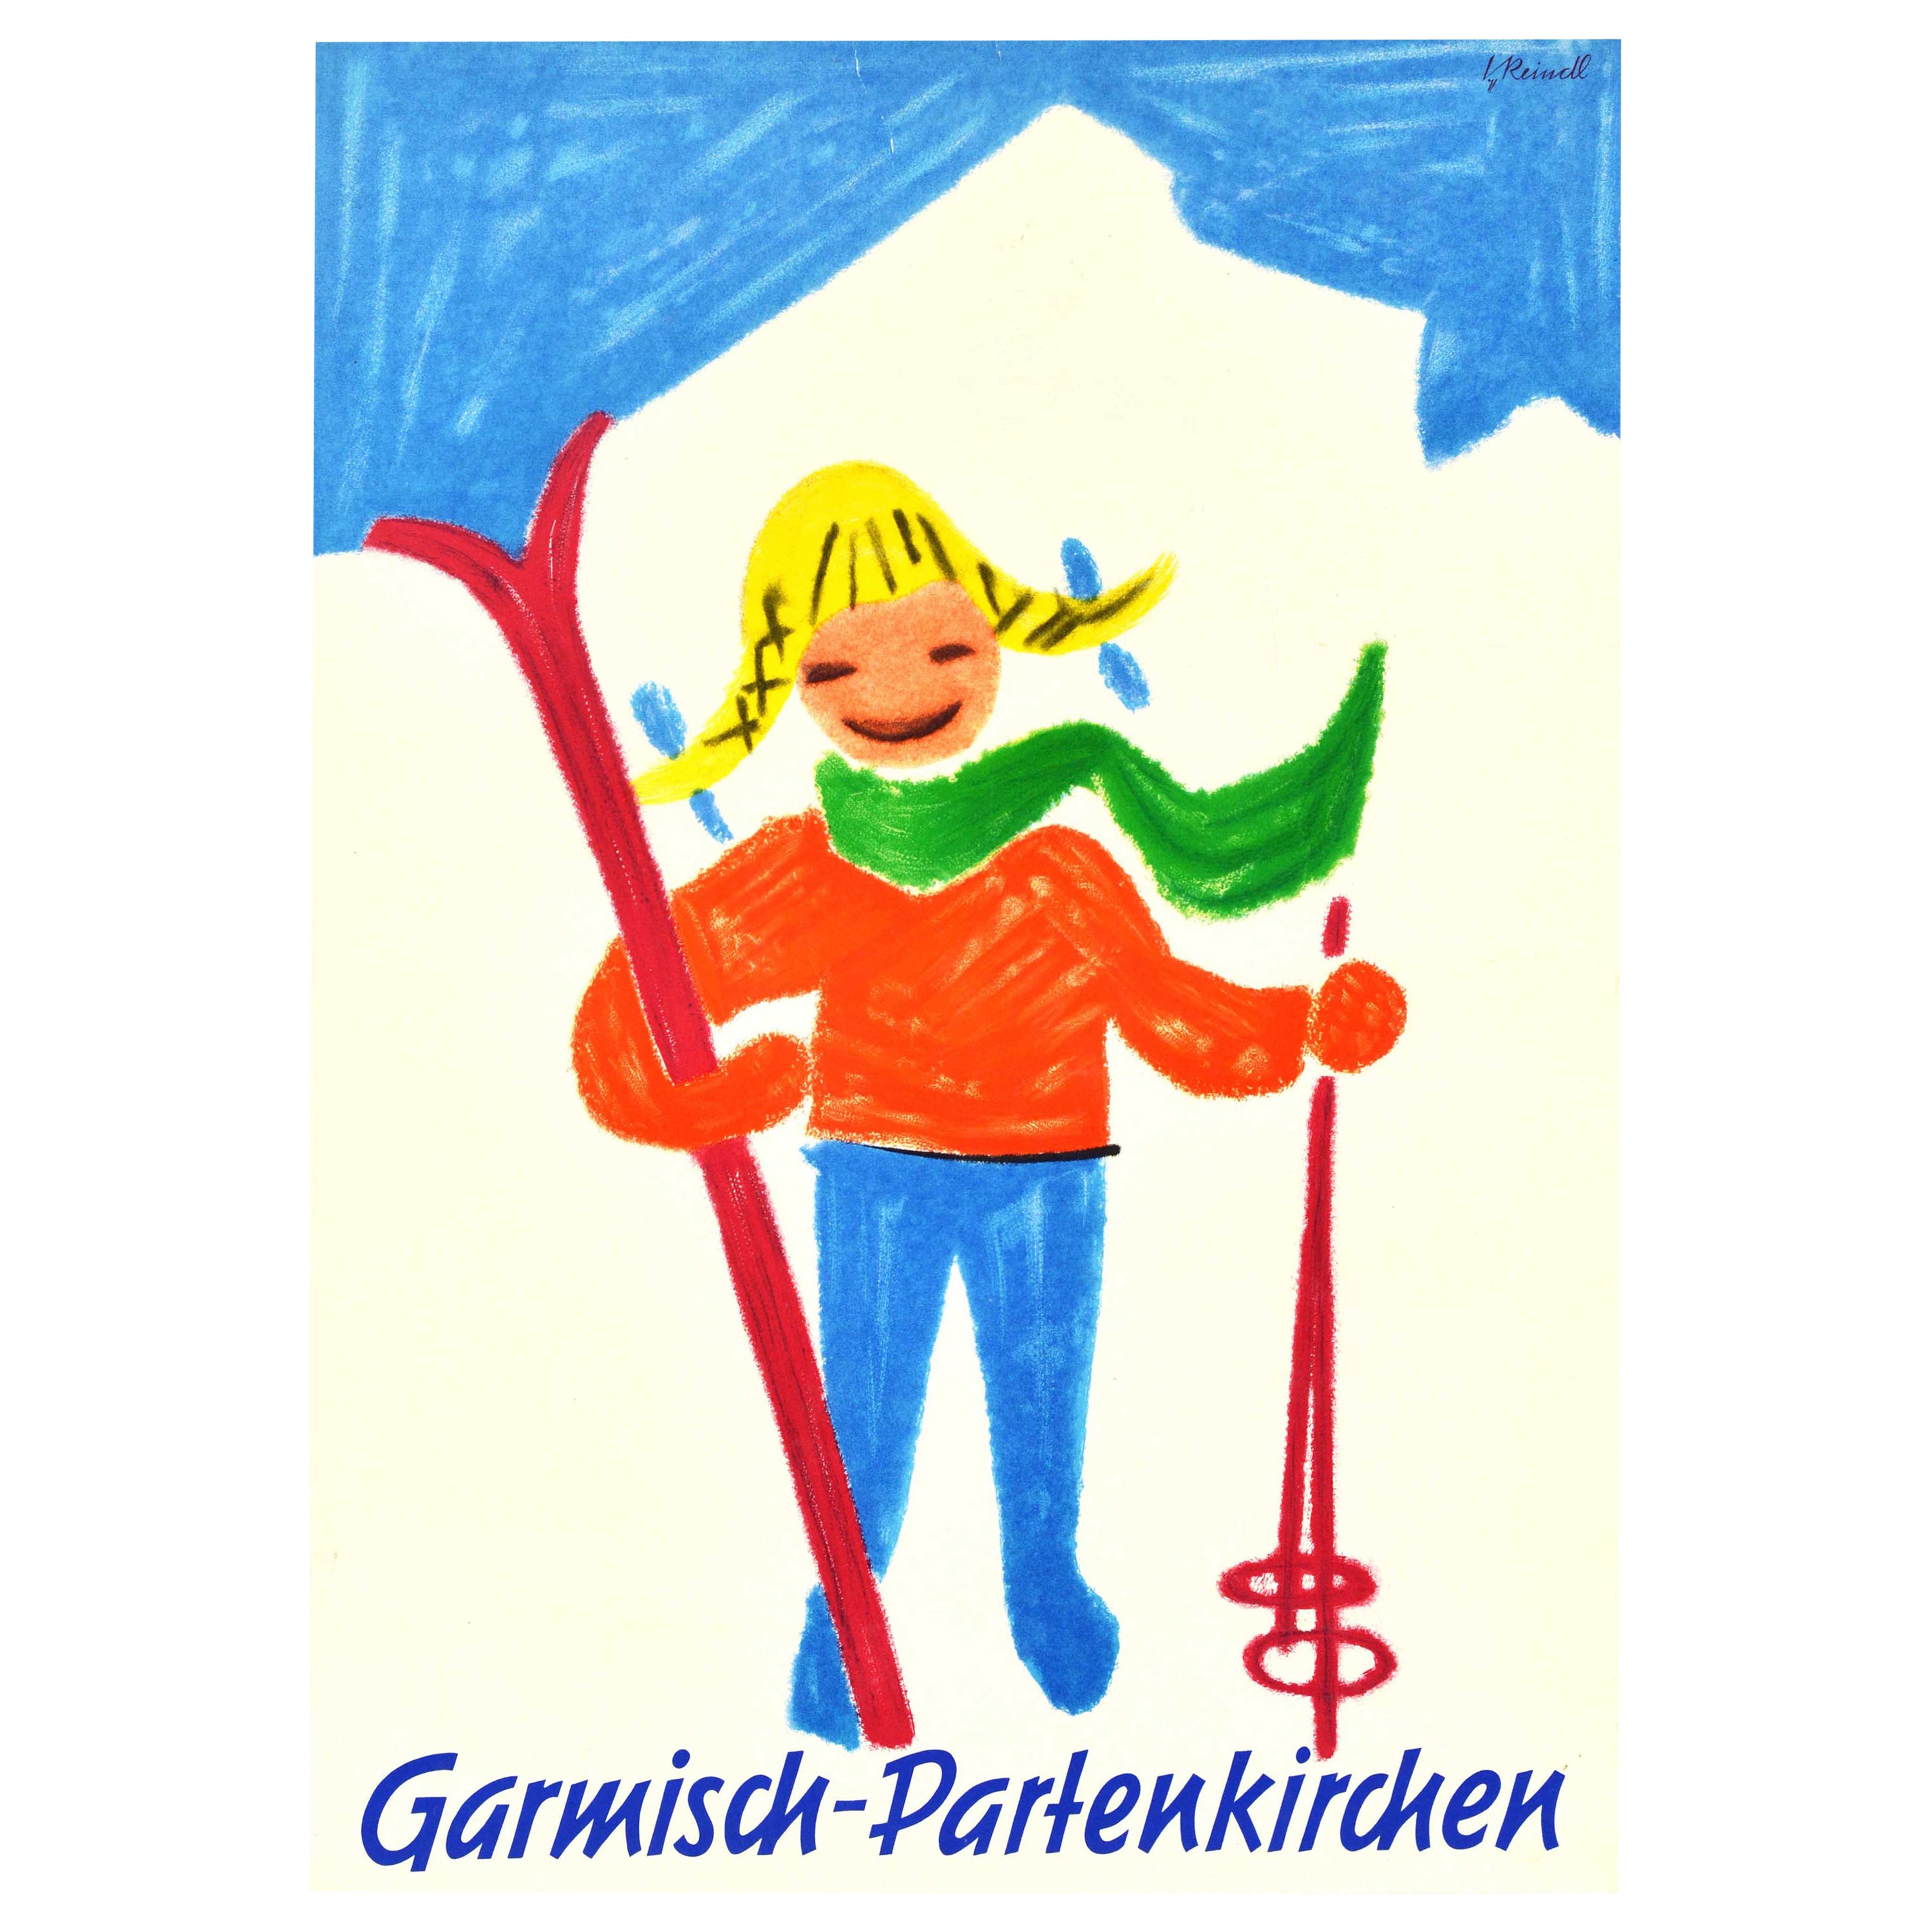 Original Vintage-Wintersport-Skiposter, Garmisch Partenkirchen, Bayern, Deutschland